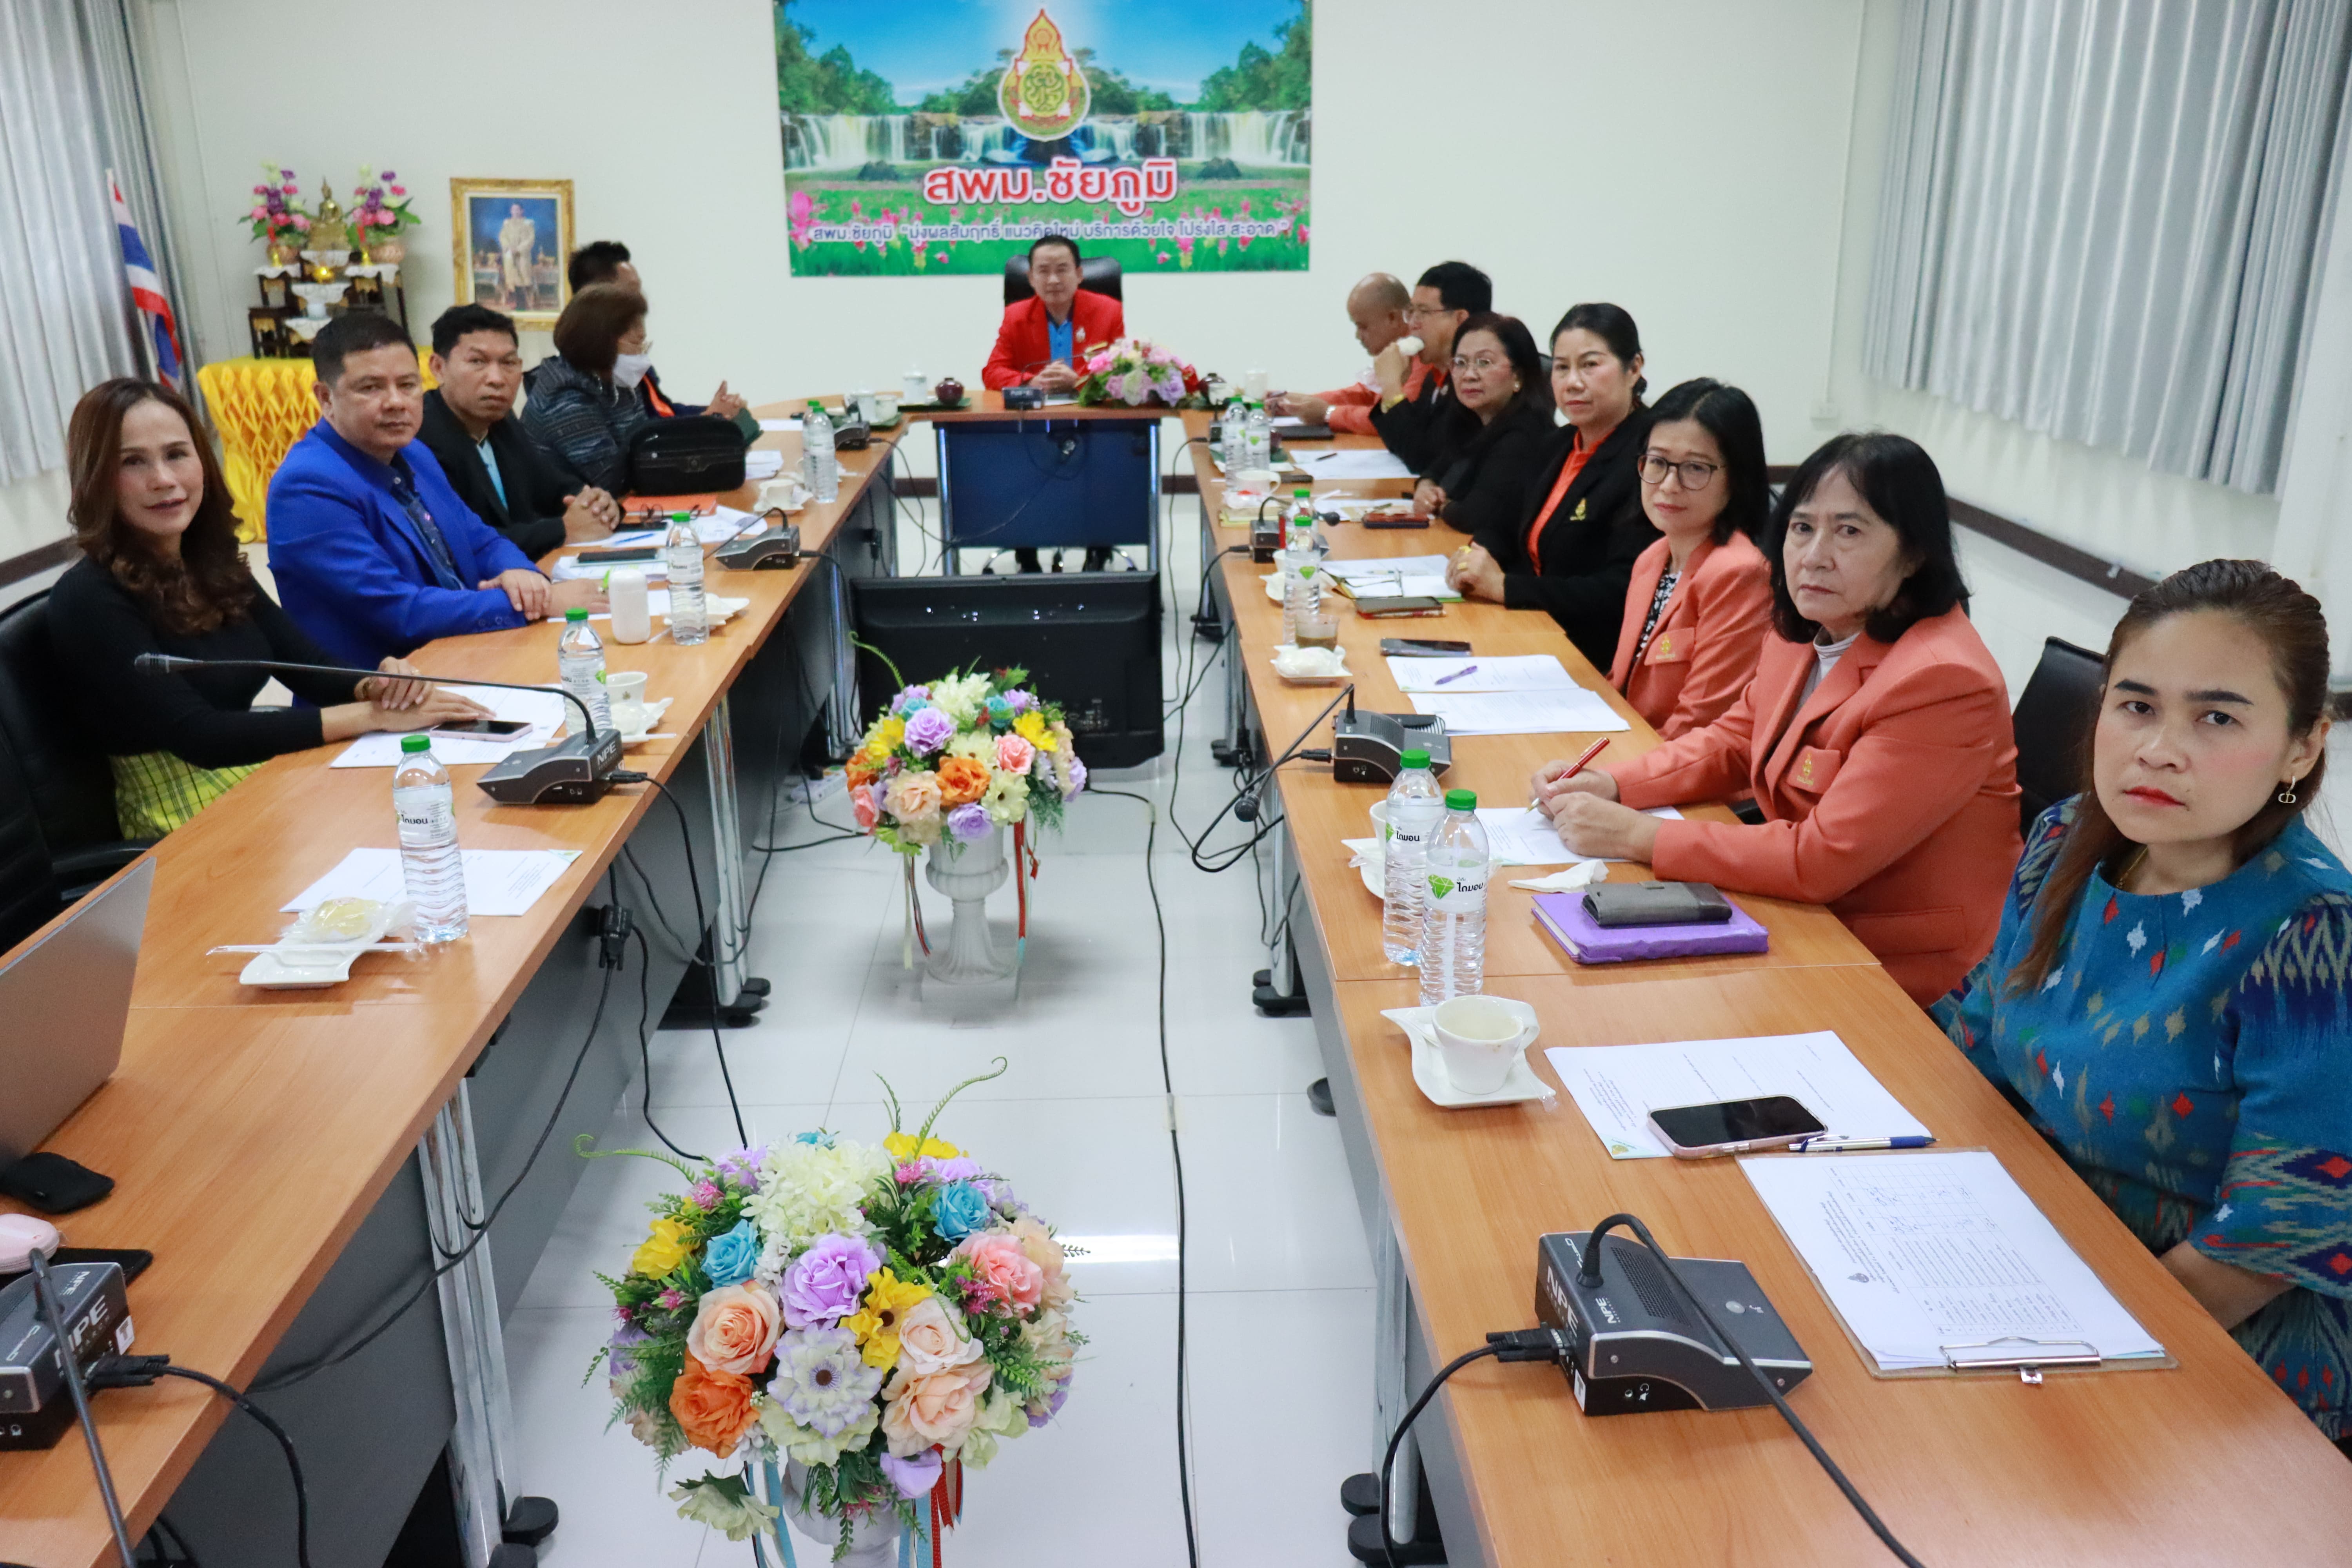 ประชุมรองสำนักงานเขตพื้นที่การศึกษา ผู้อำนวยการกลุ่ม ผู้อำนวยการหน่วย สพม.ชัยภูมิ ครั้งที่ 11/2566